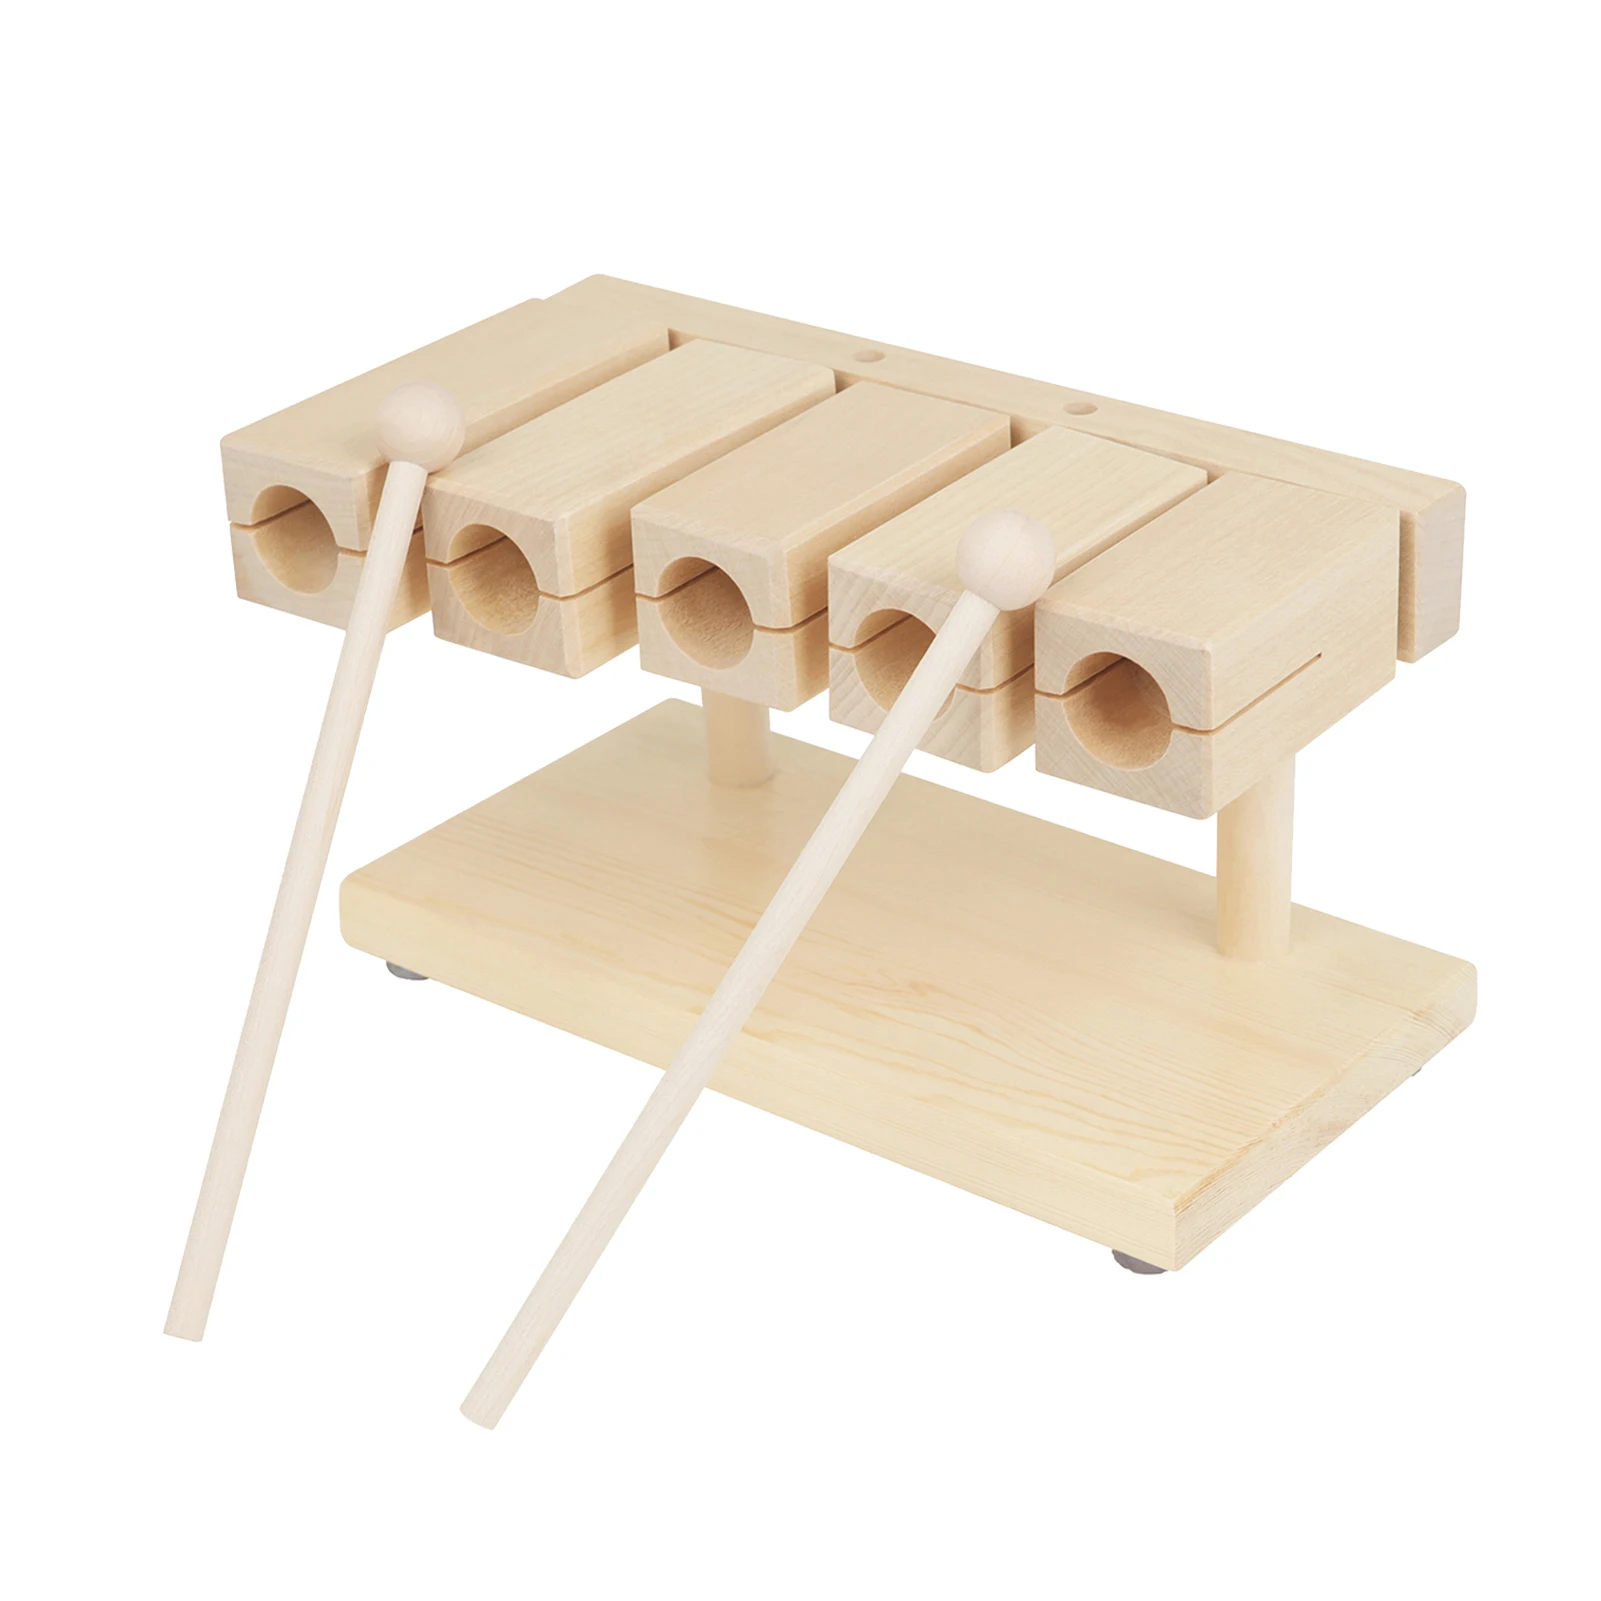 

Деревянный ритмичный блок, блок, твердый кленовый материал, 5 оттенков, музыкальный перкуссионный инструмент с молотком для обучения